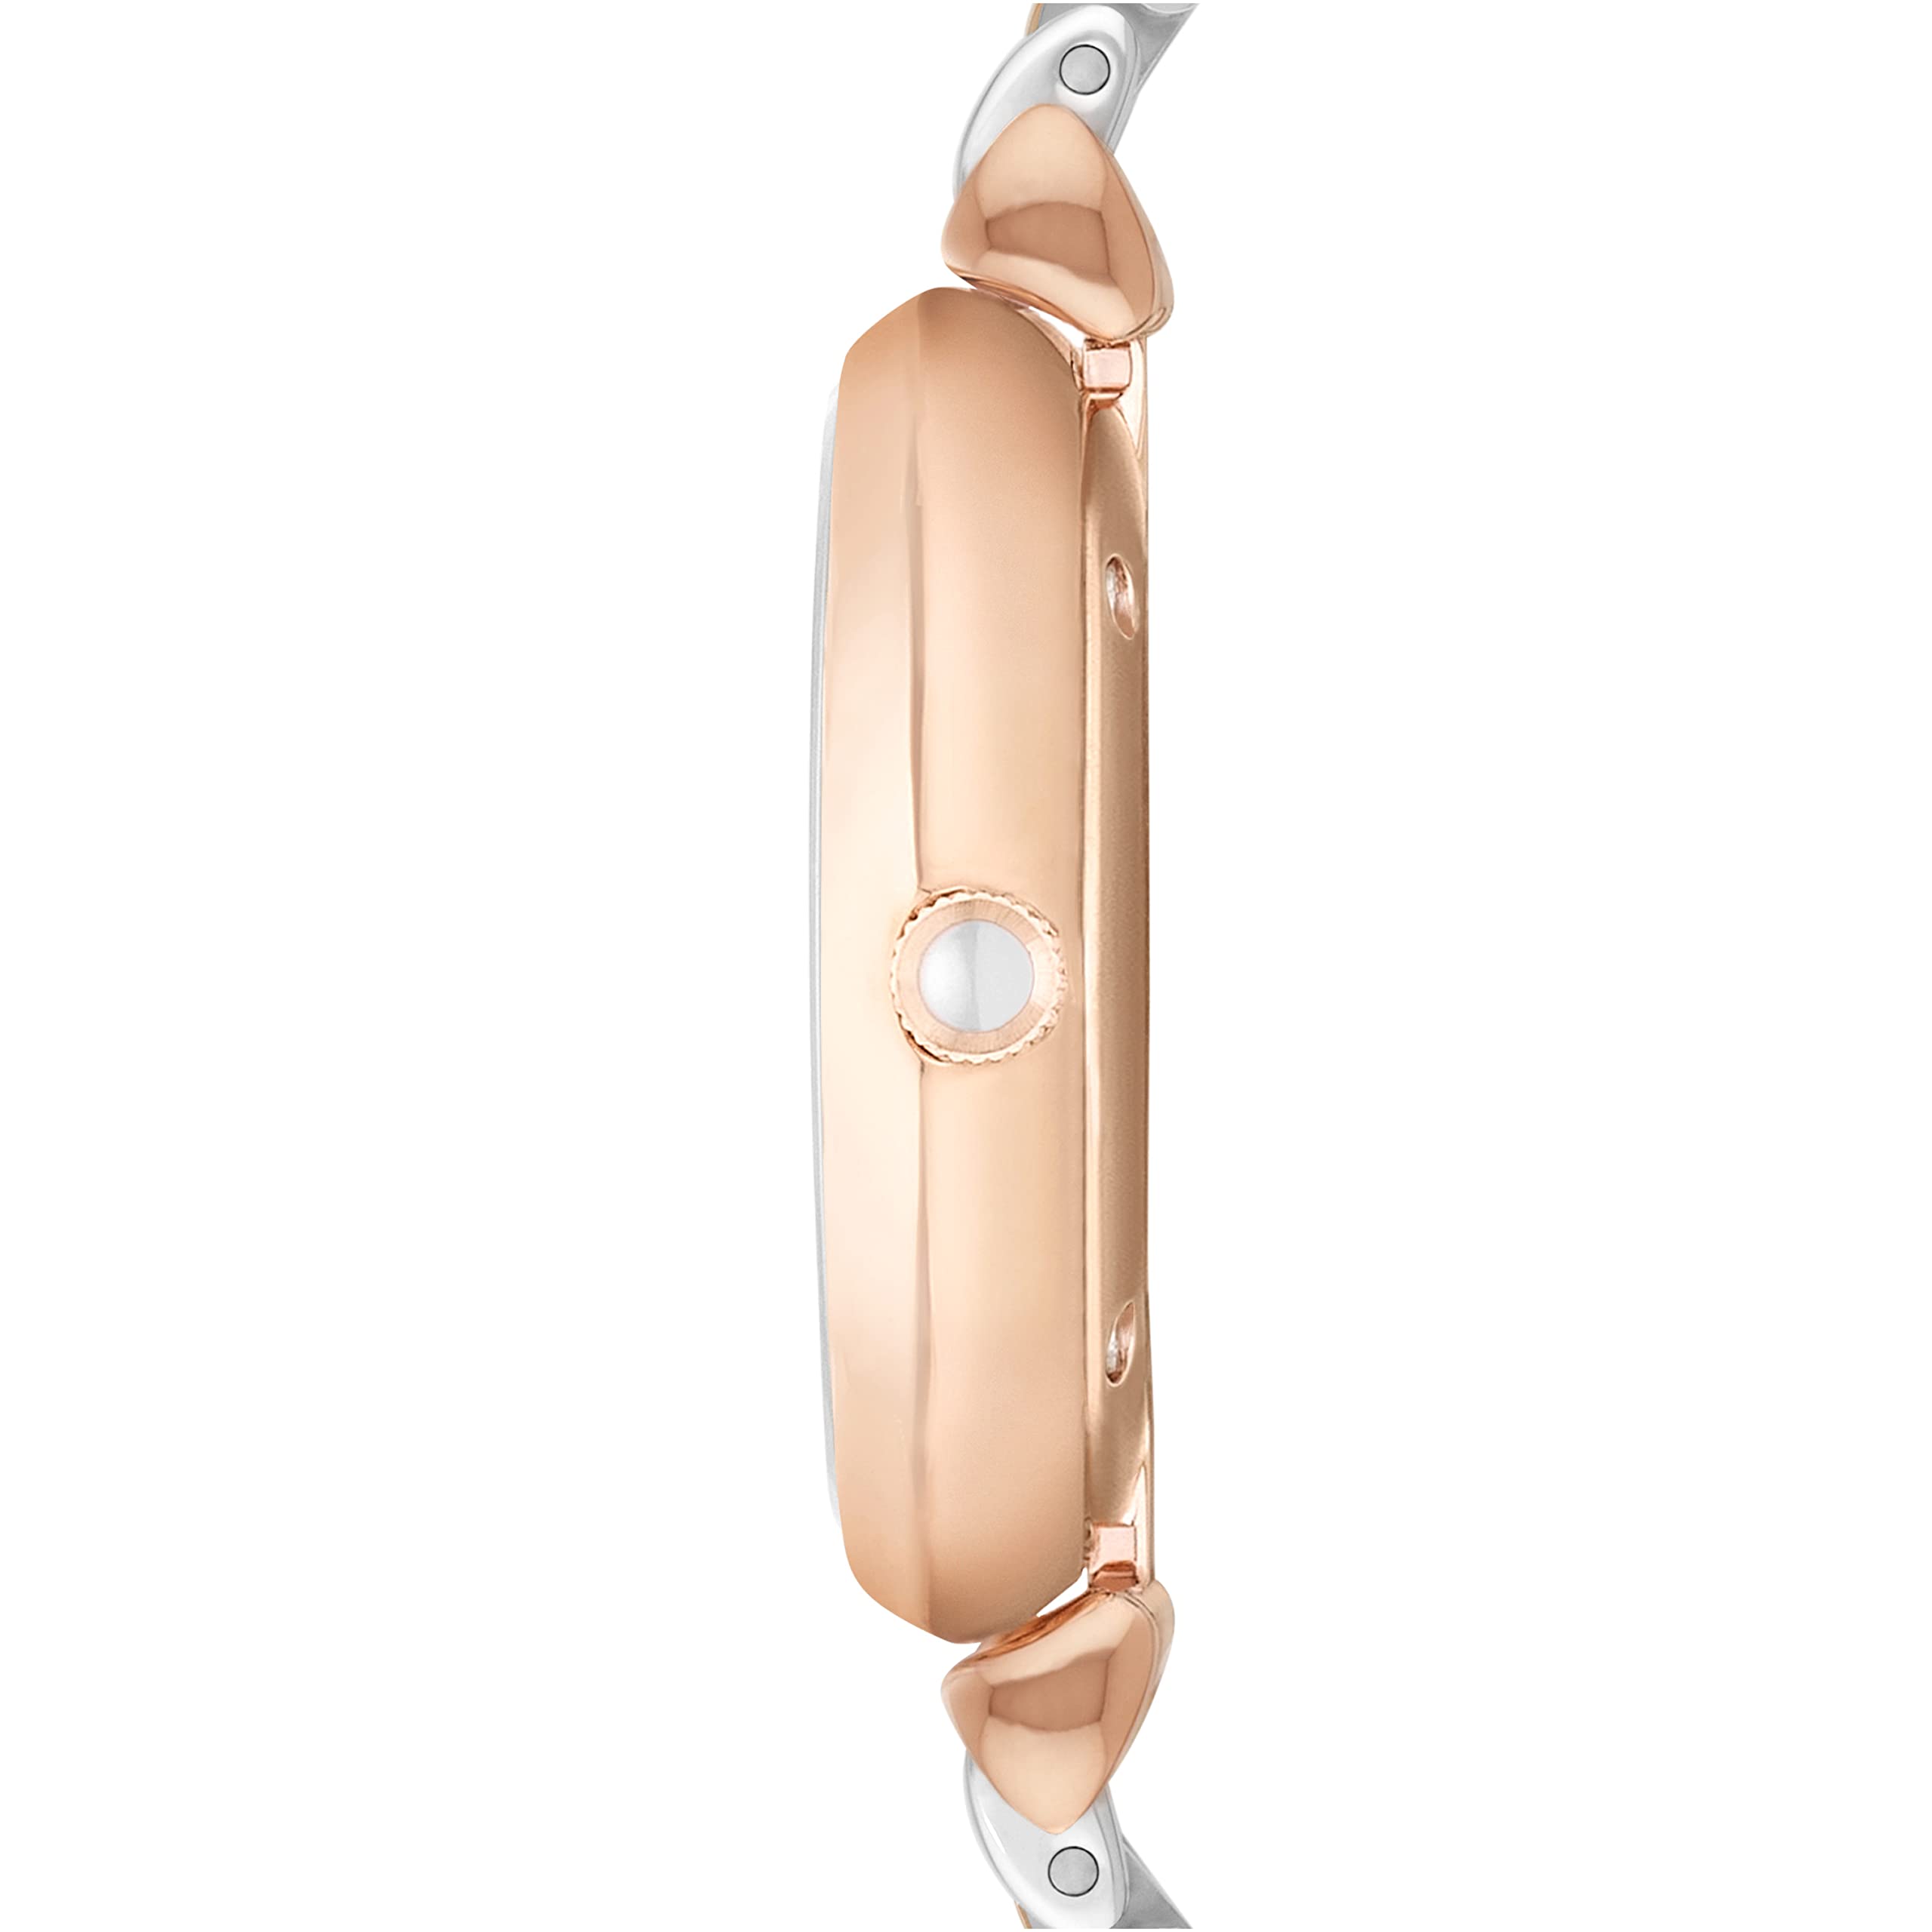 Emporio Armani Damenuhr-Zweizeiger-Armbanduhr aus Edelstahl, 32 mm Gehäusegröße